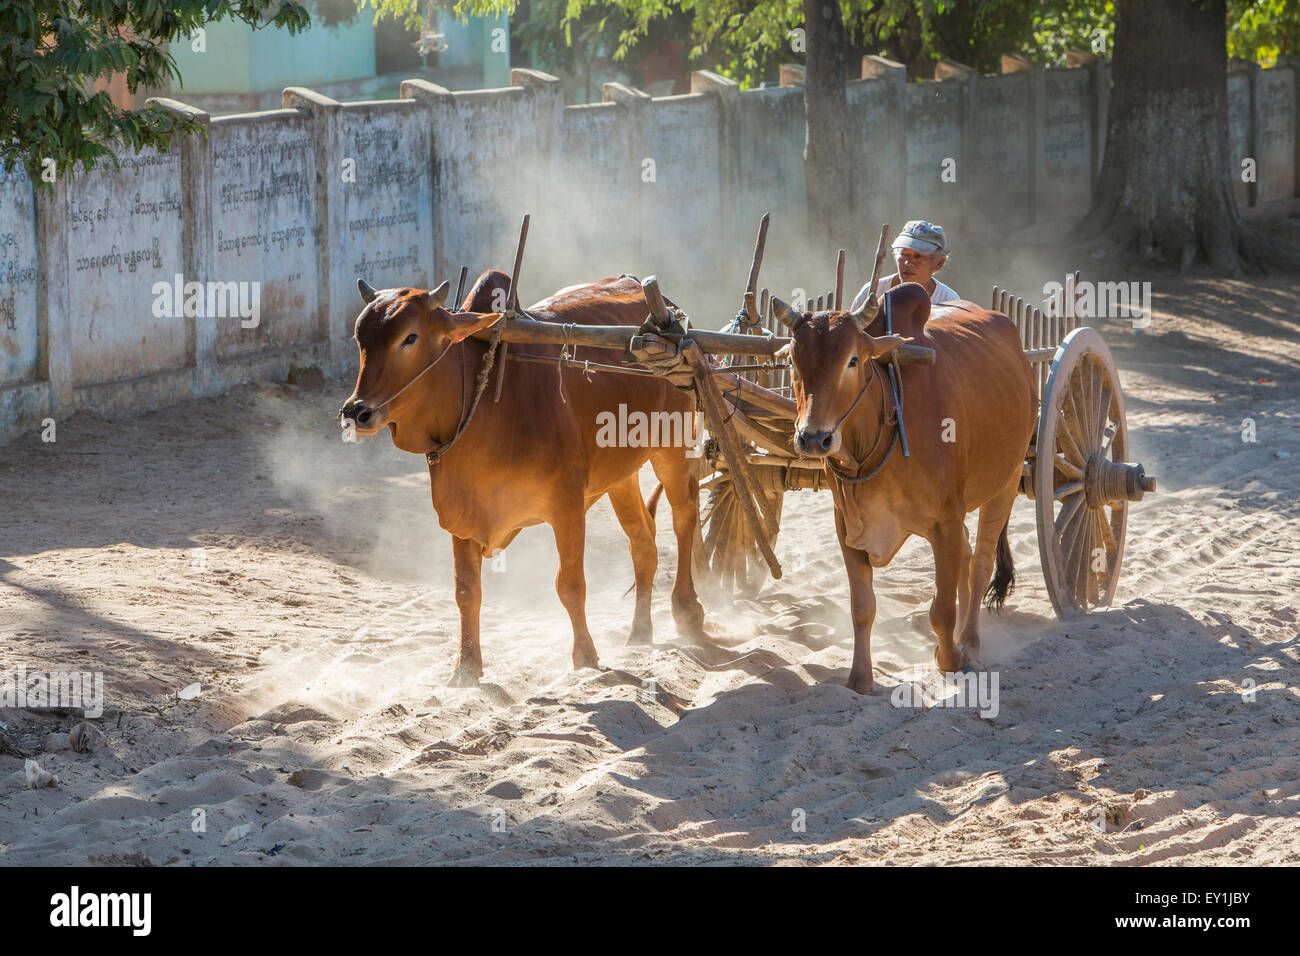 Los carros de bueyes en la retroiluminación, Salay, Myanmar Foto de stock